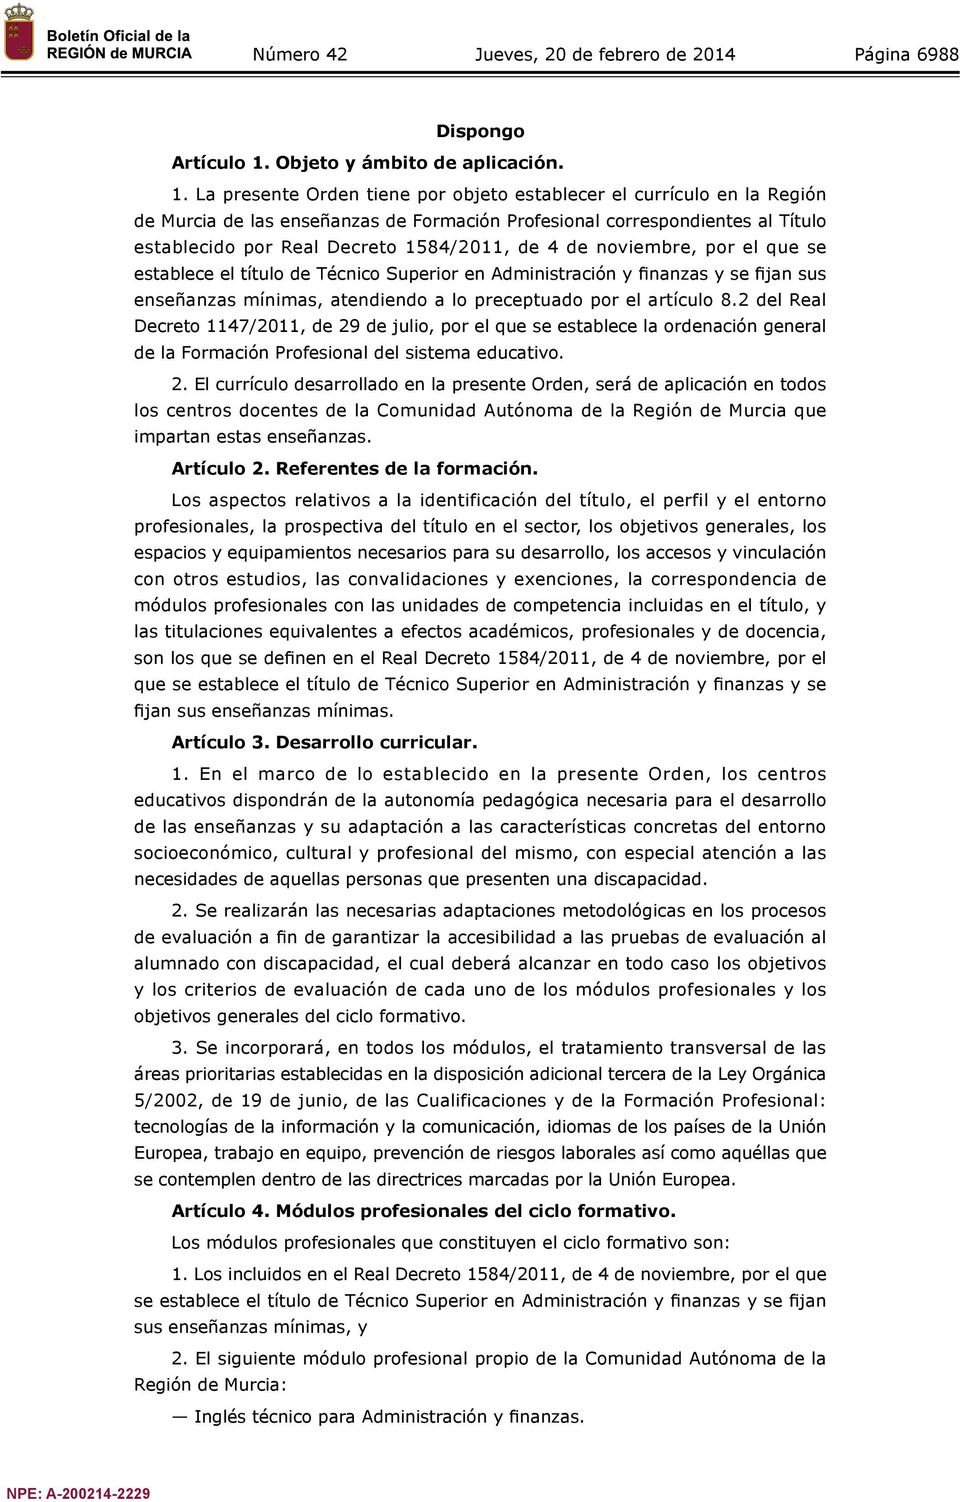 La presente Orden tiene por objeto establecer el currículo en la Región de Murcia de las enseñanzas de Formación Profesional correspondientes al Título establecido por Real Decreto 1584/2011, de 4 de